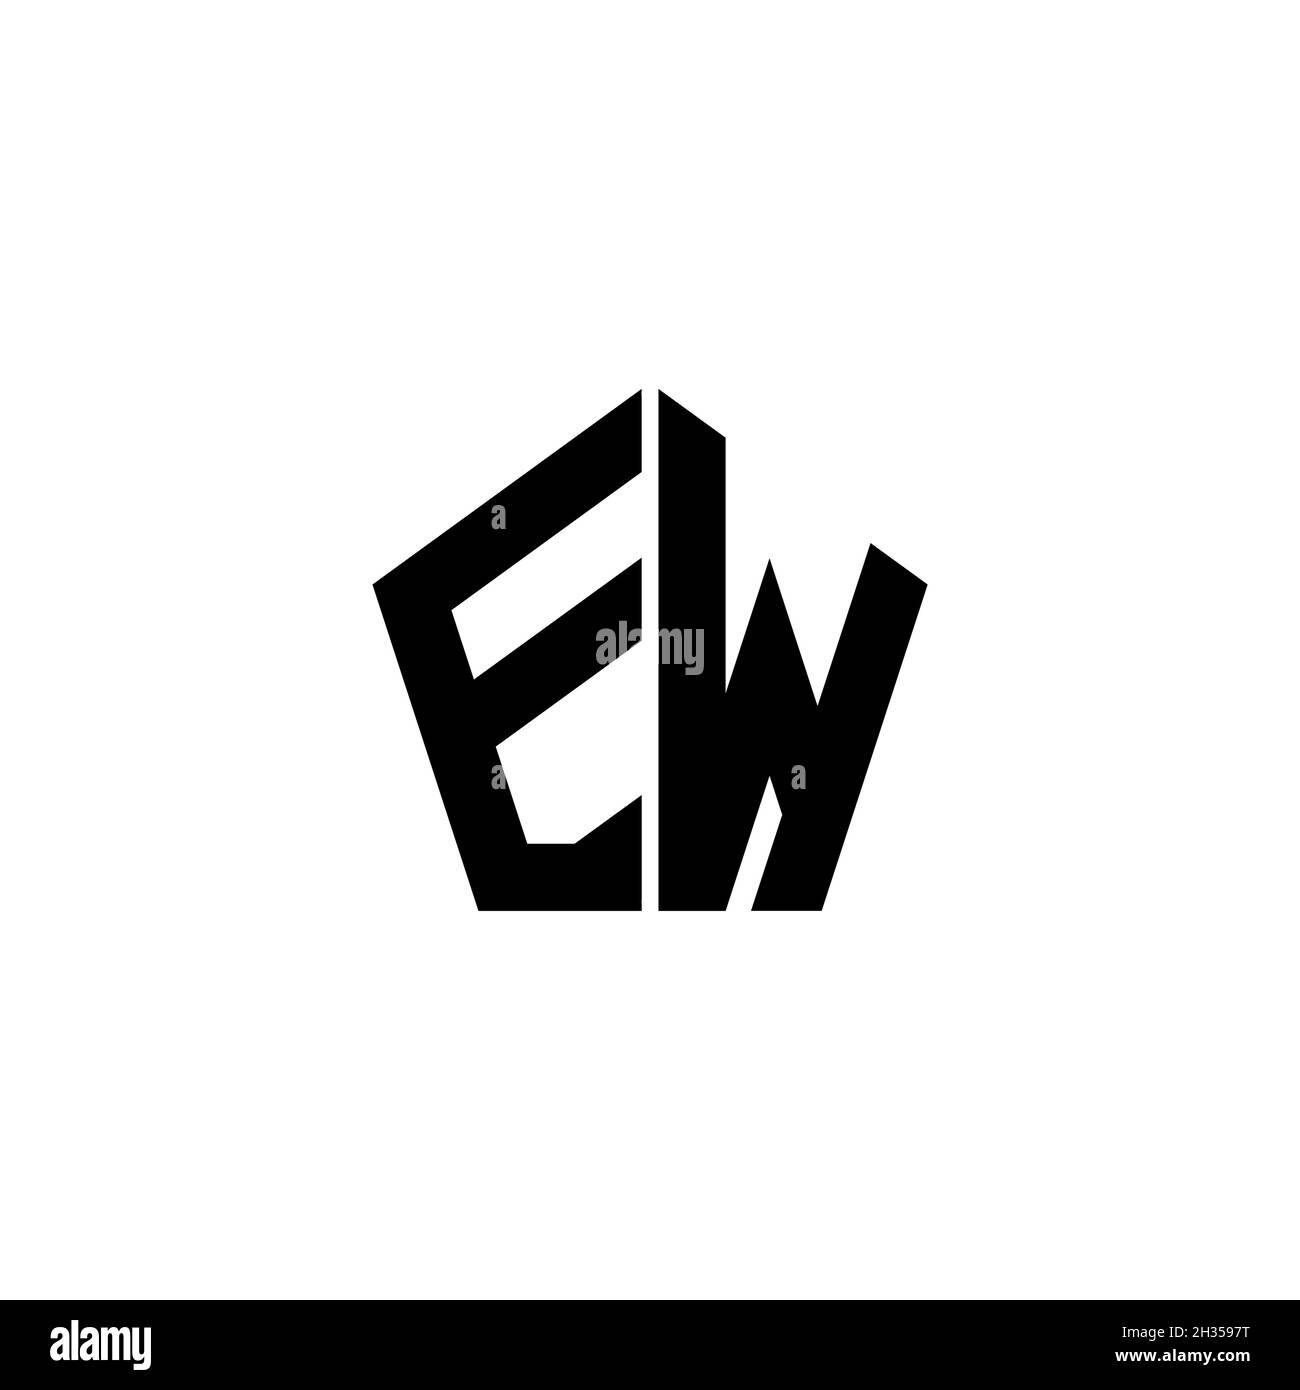 Lettre du logo EW Monogram avec forme géométrique polygonale isolée sur fond blanc.Polygonale étoile, étoile de bouclier géométrique. Illustration de Vecteur